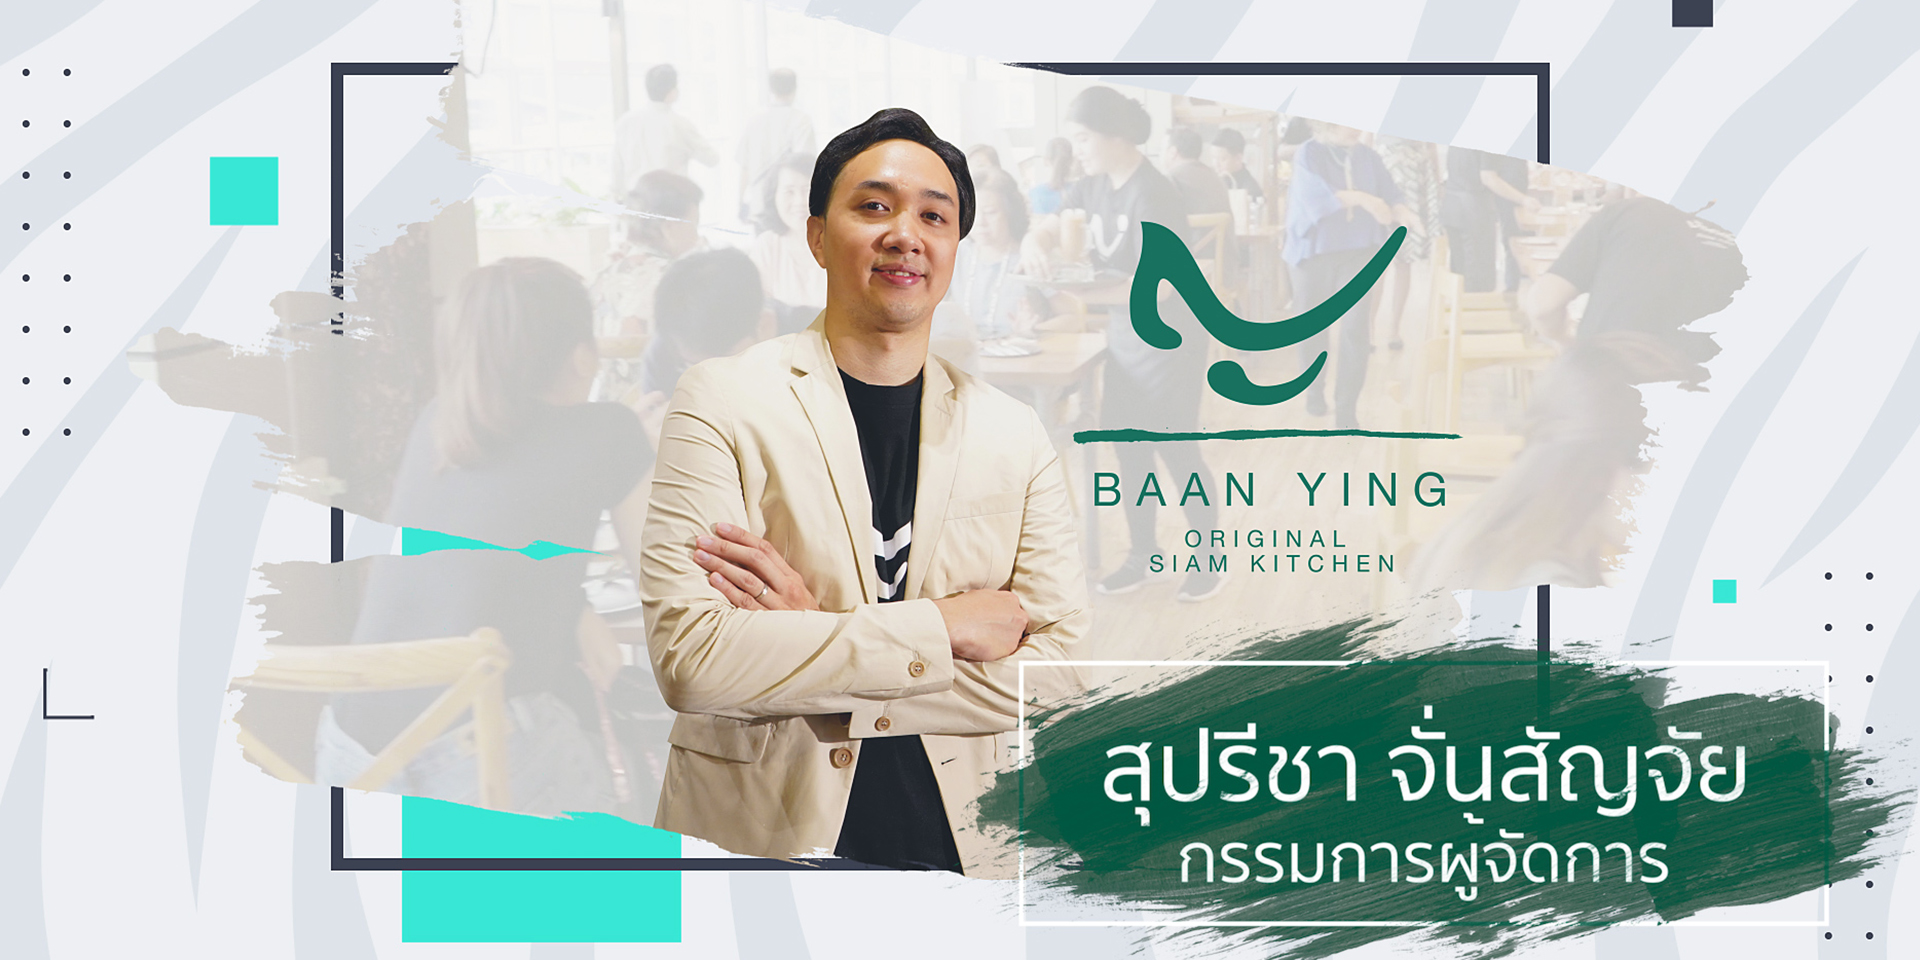 Baan Ying Original Siam Kitchen